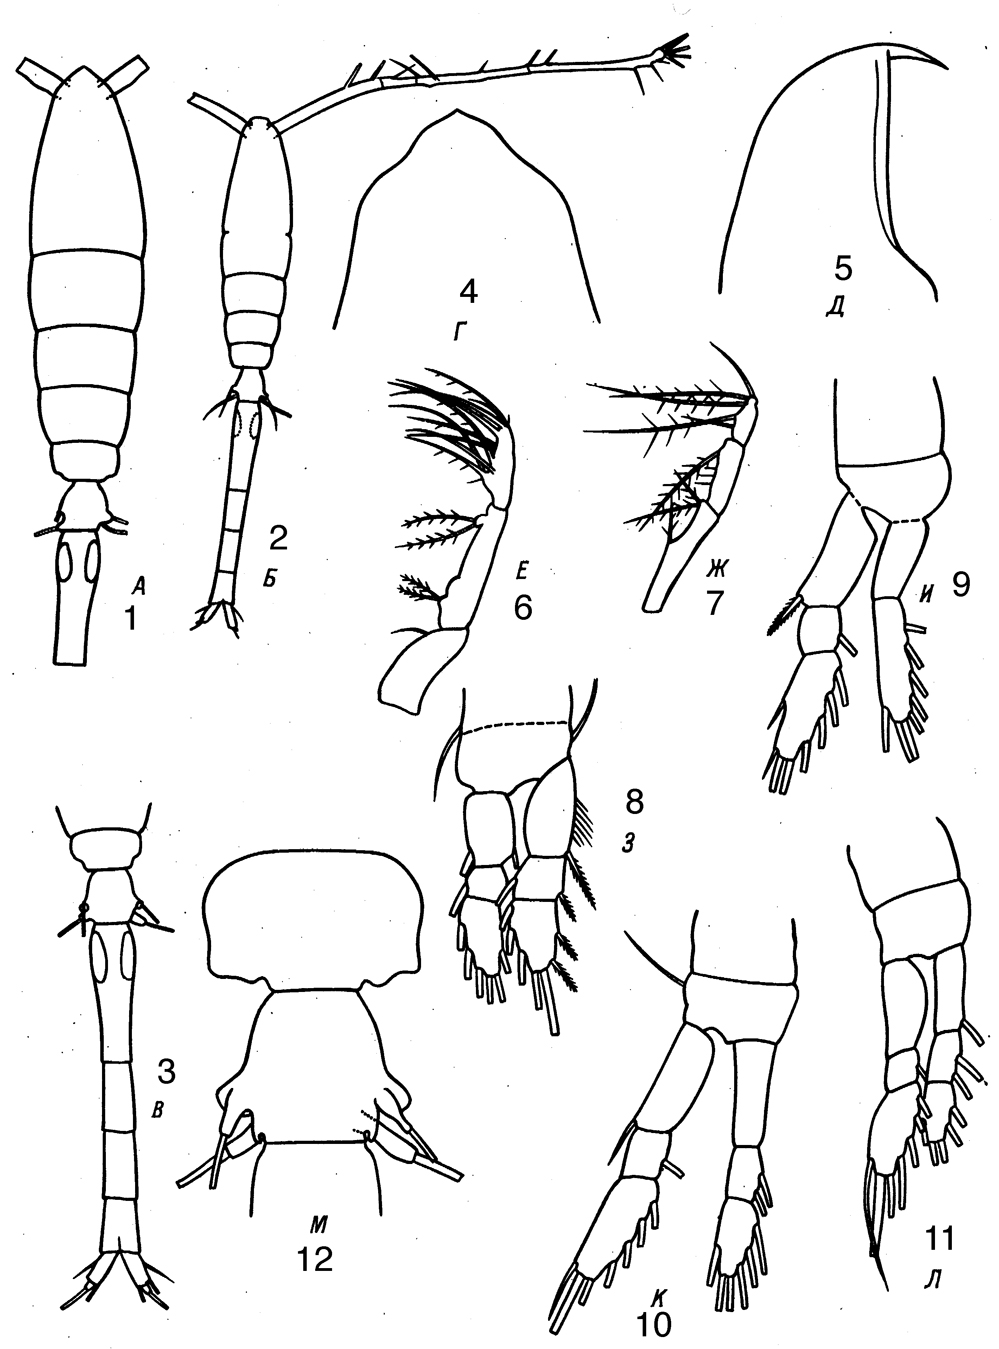 Espèce Oithona tenuis - Planche 7 de figures morphologiques